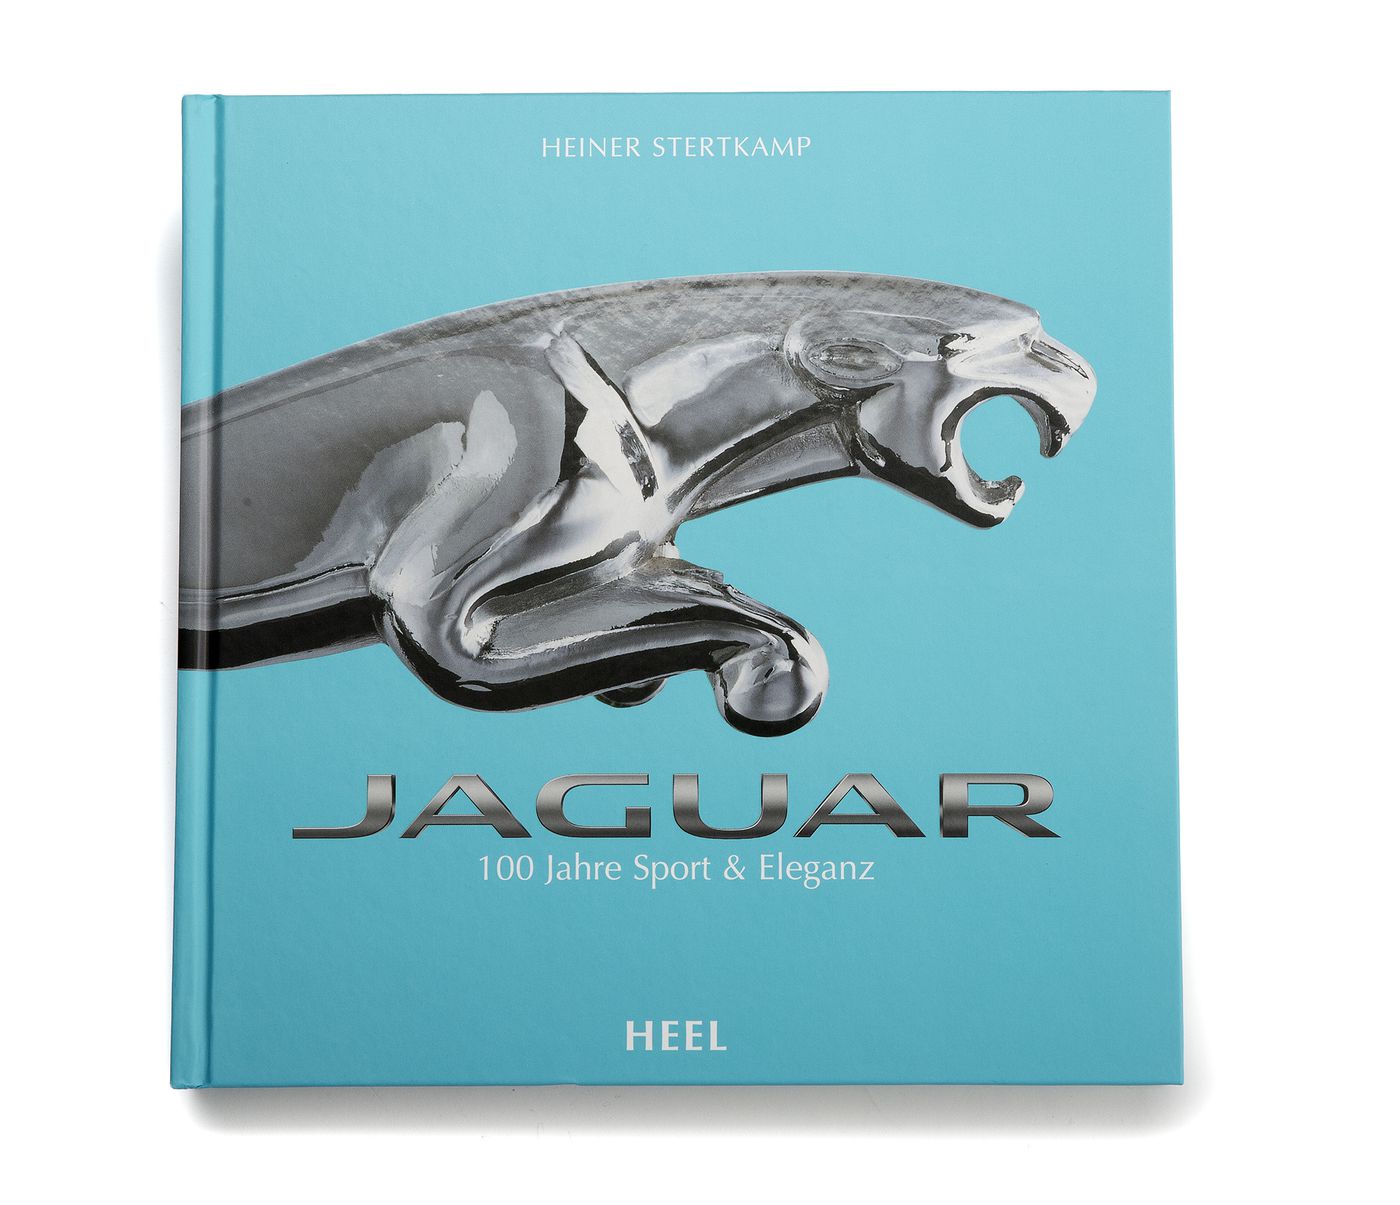 Jaguar
Jaguar
Jaguar
Jaguar
Jaguar